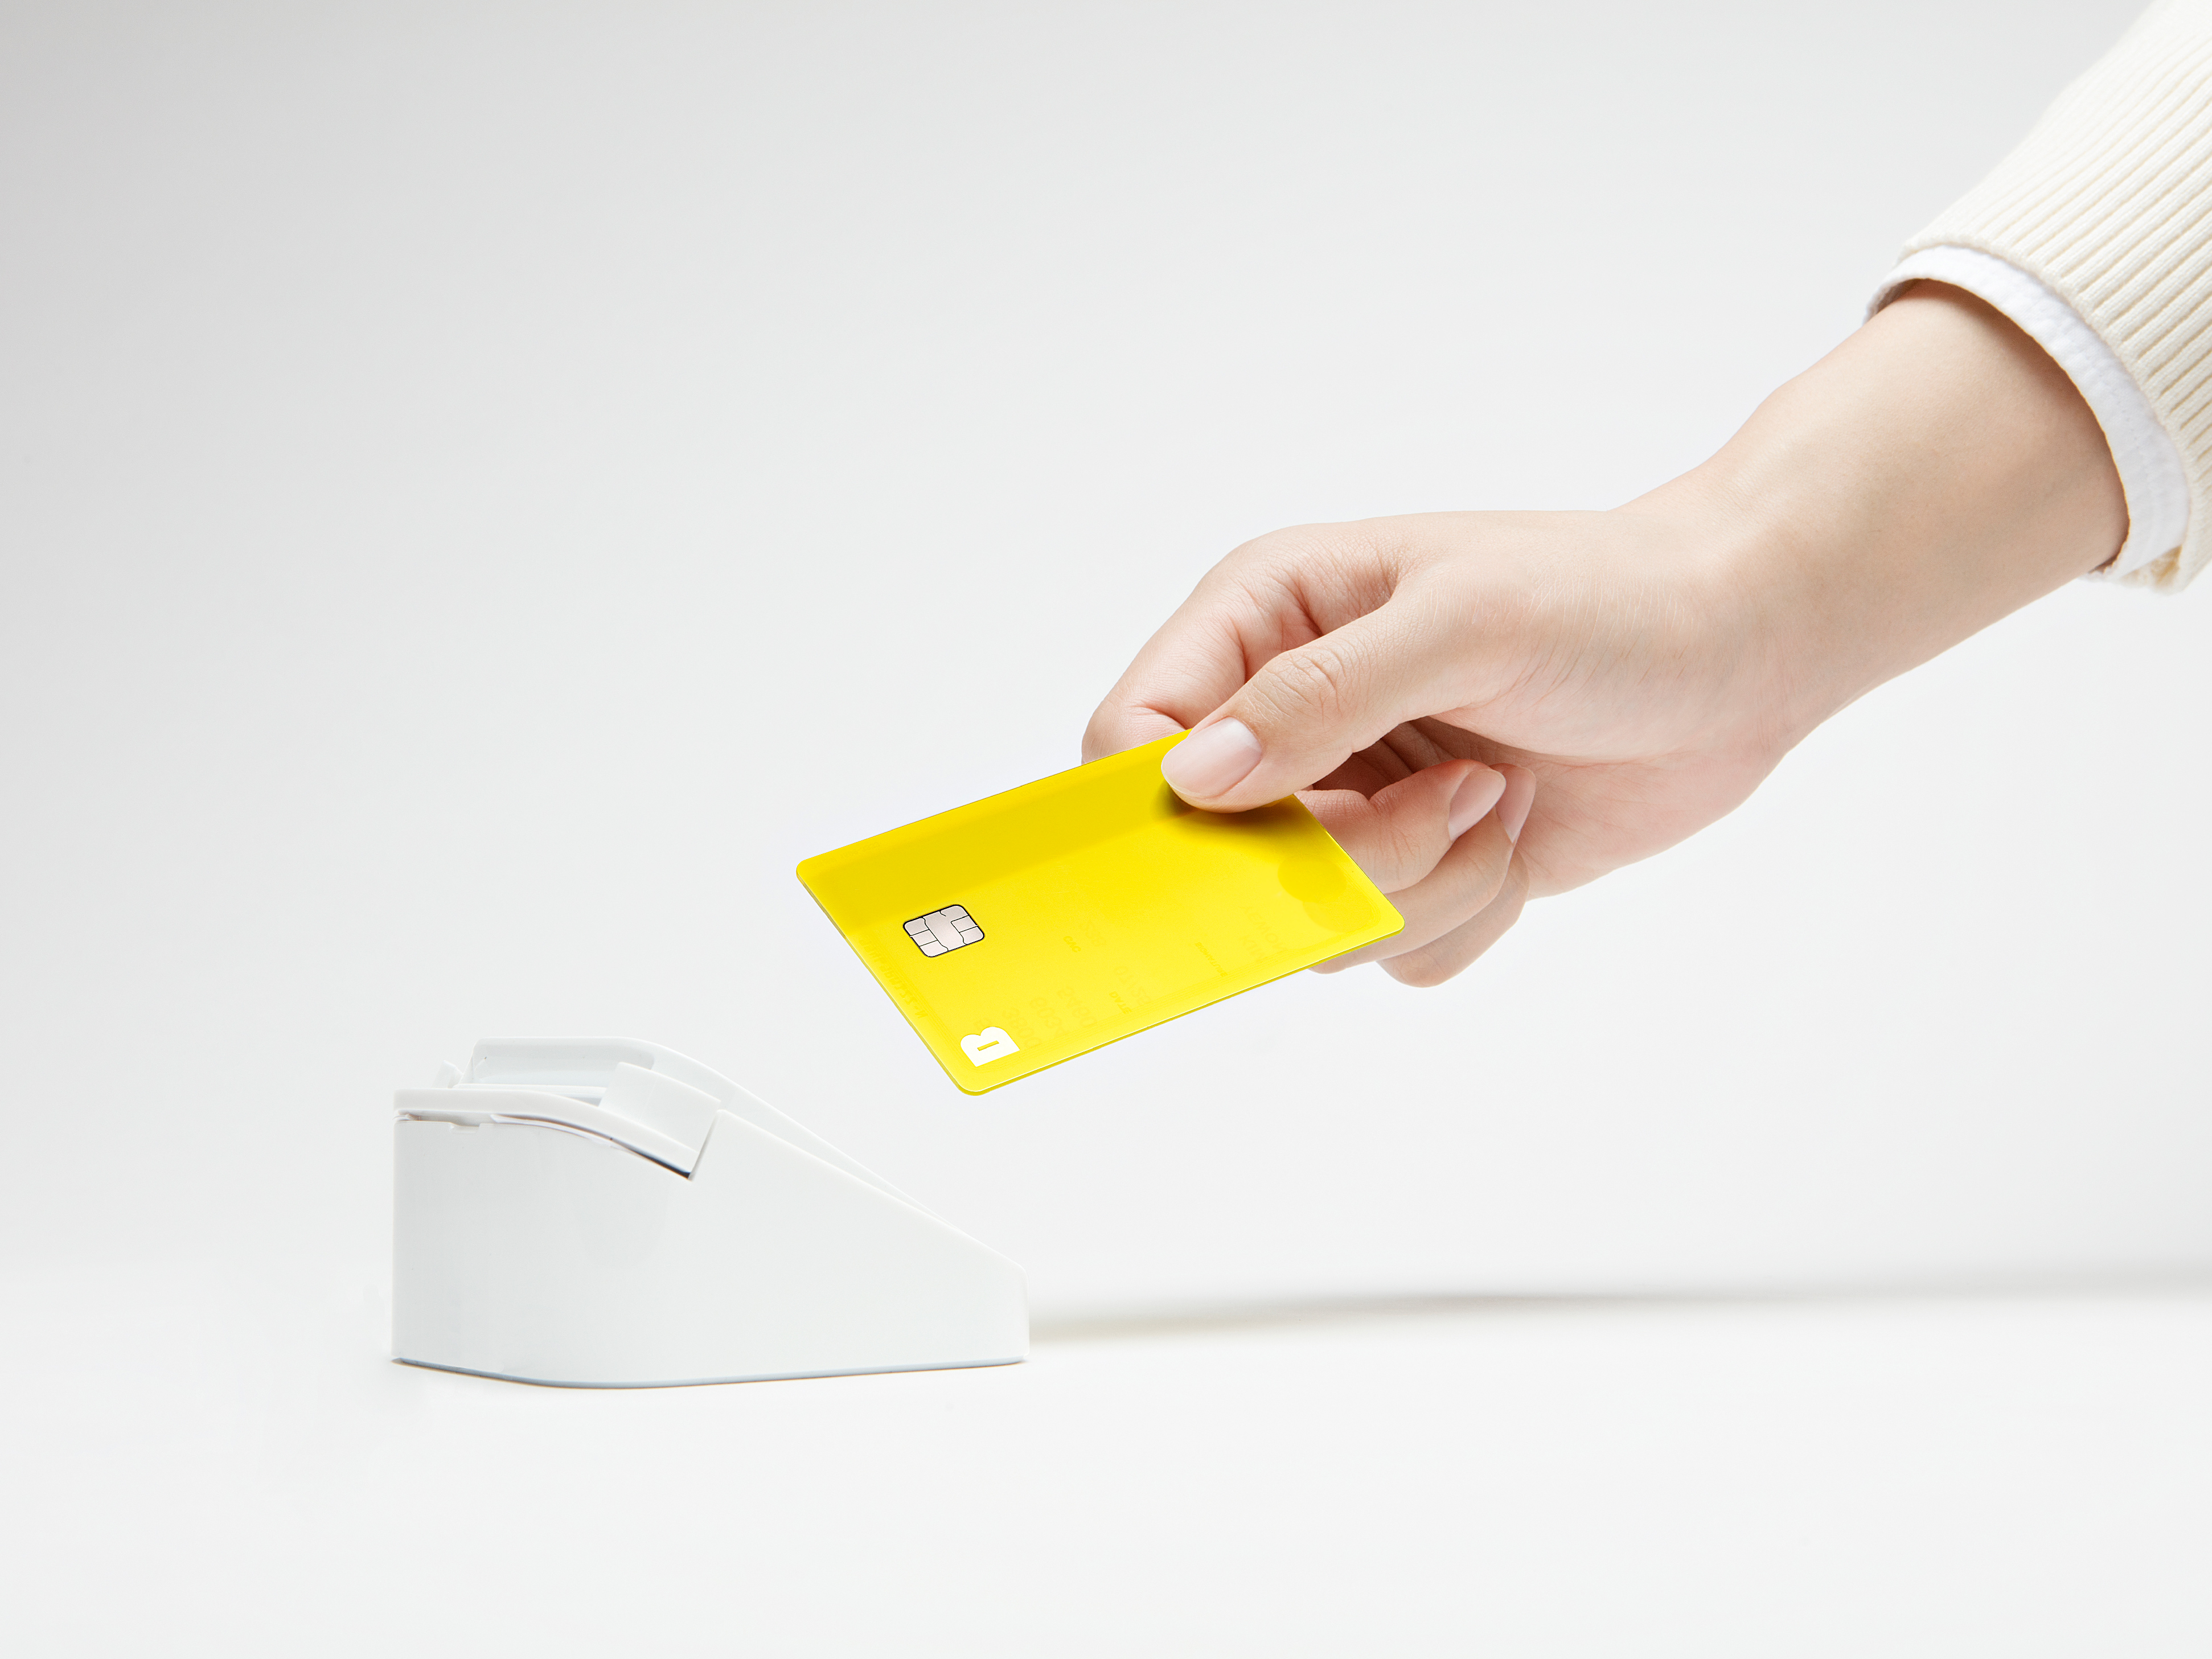 KakaoBank Customized Debit Card